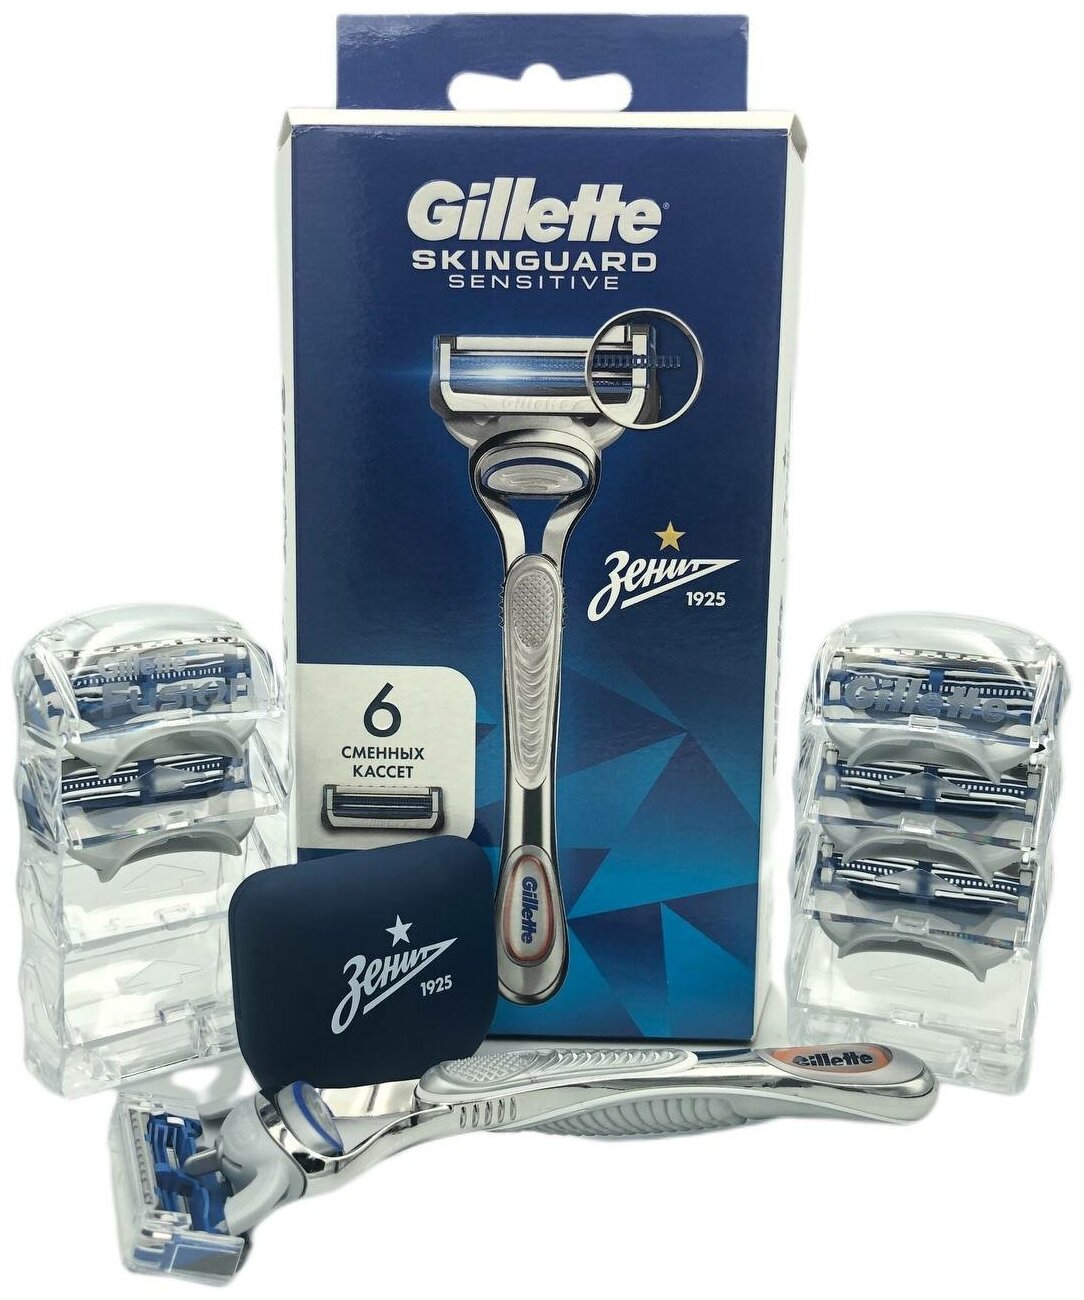 Подарочный набор GILLETTE Skinguard с чехлом для бритвы в комплекте сменных кассет 6 шт.